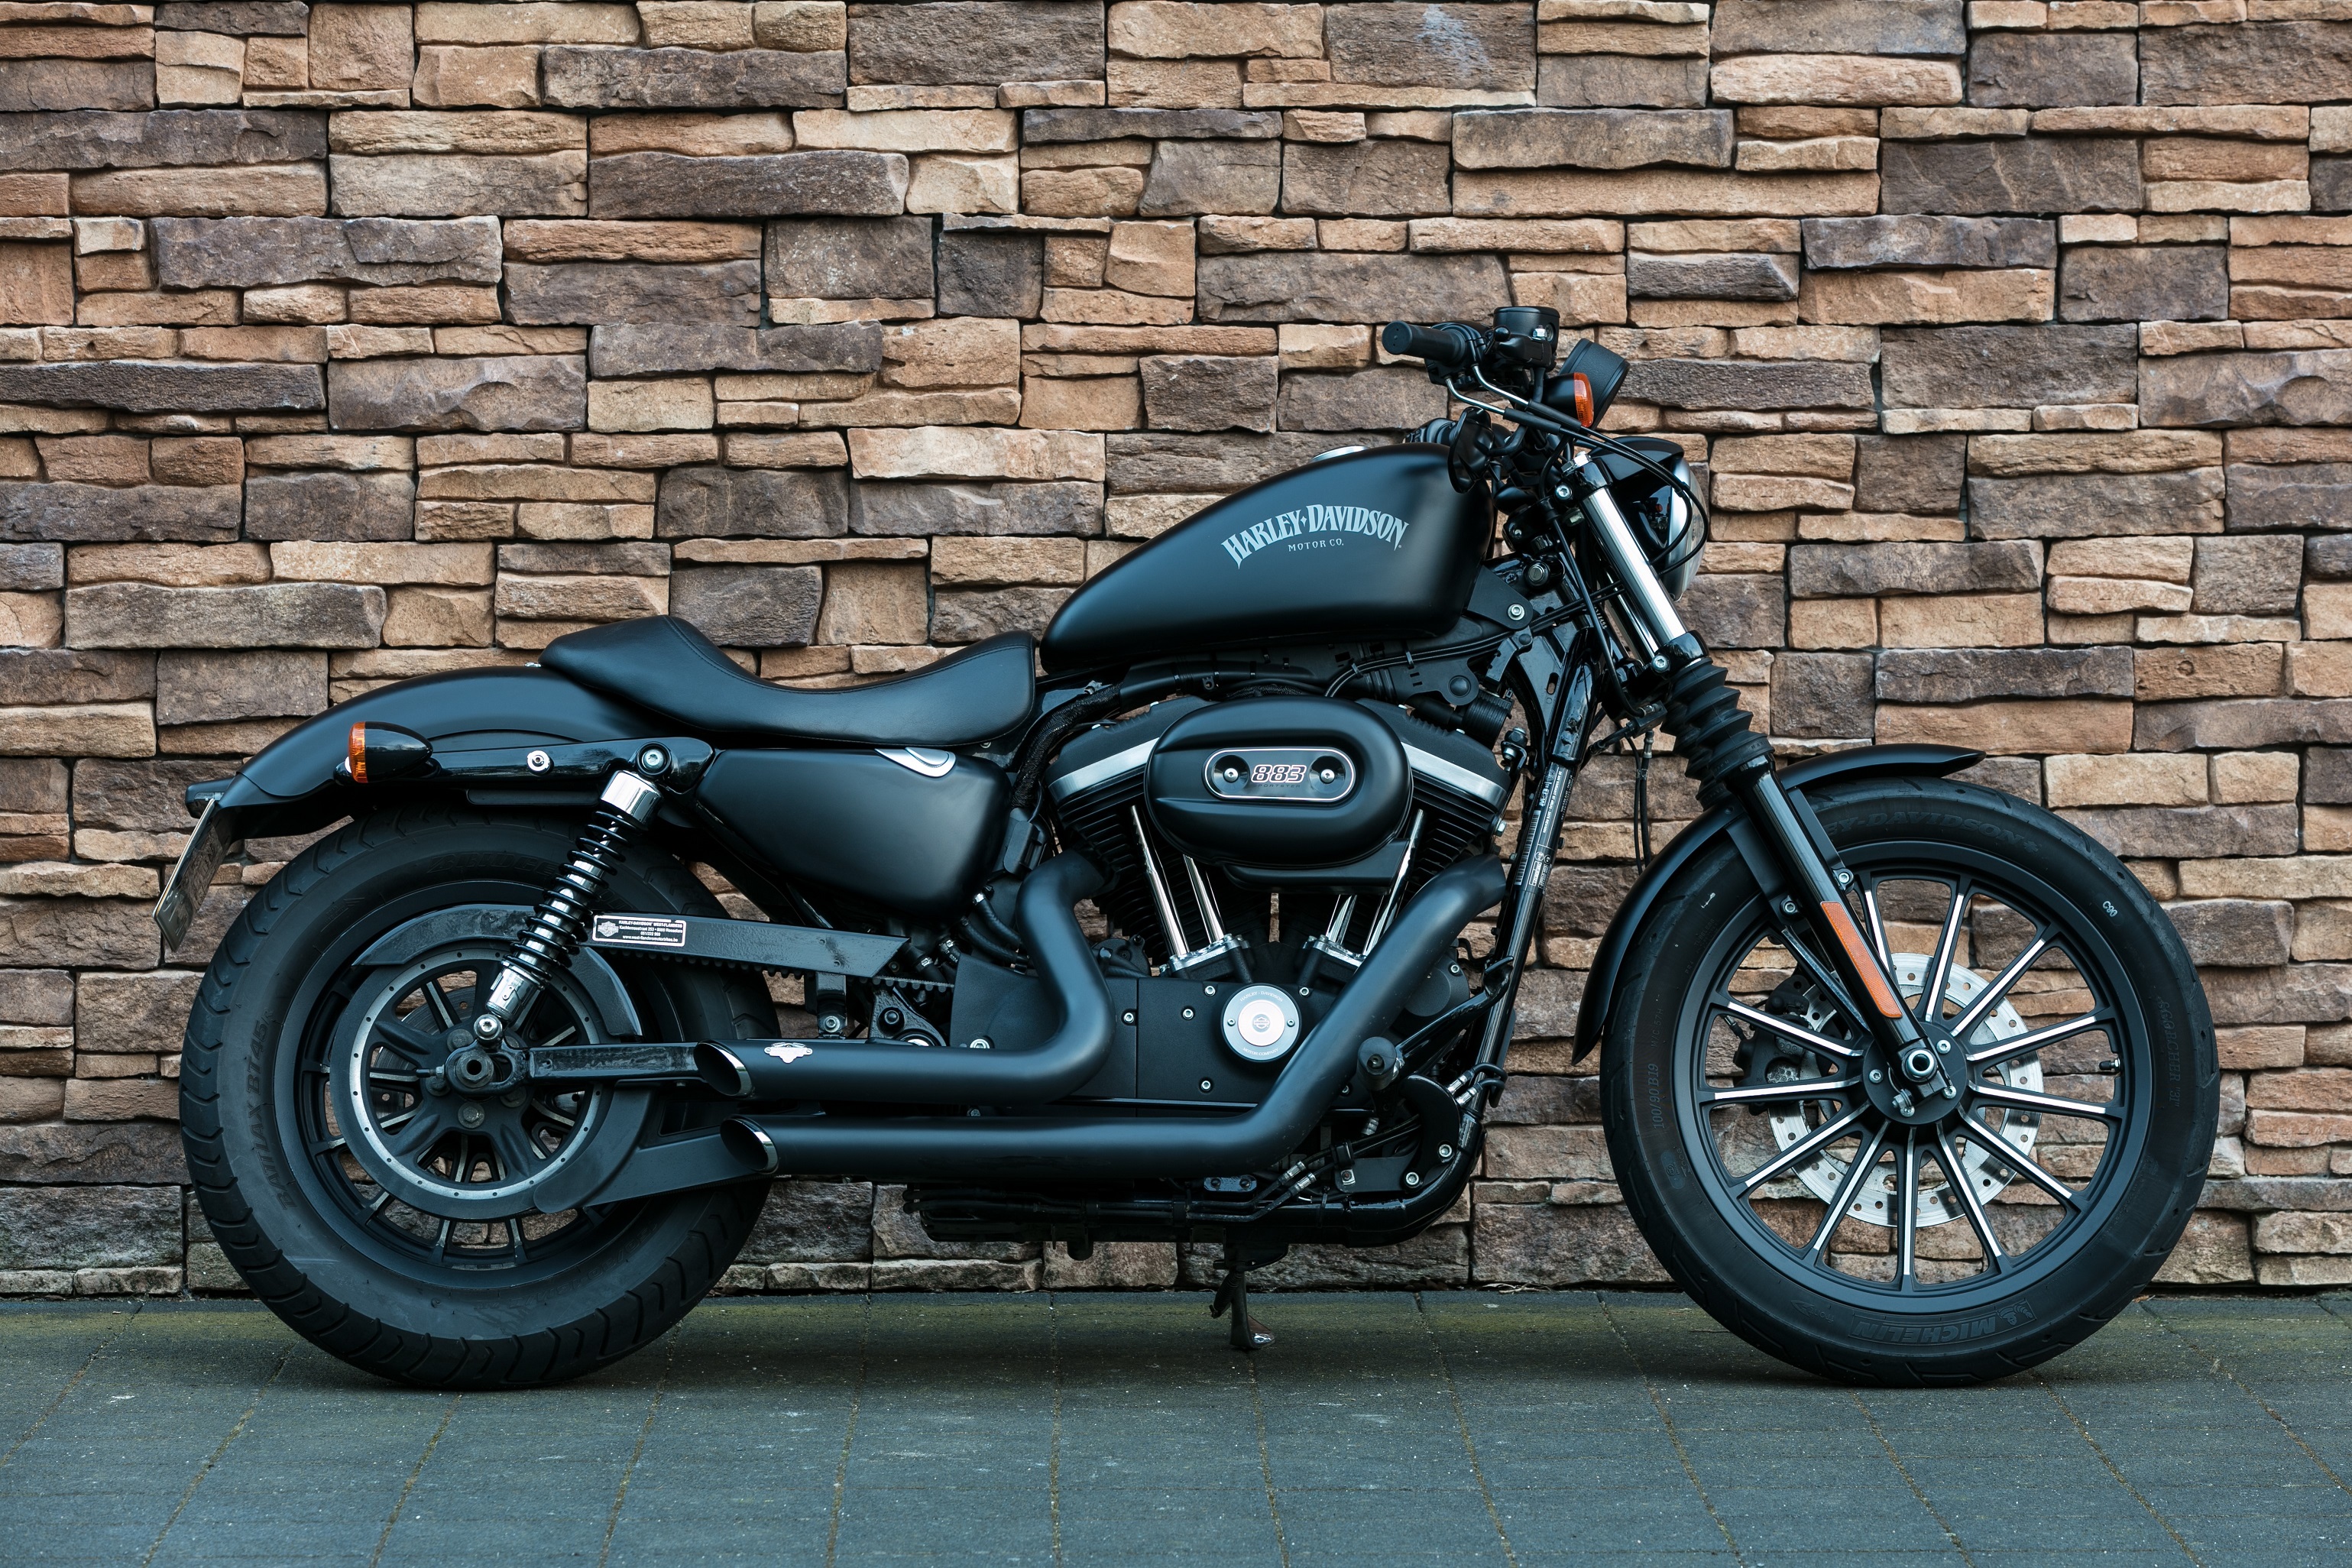 terugtrekken meer Titicaca verklaren 2014 Harley-Davidson XL883 N Sportster Iron ABS *VERKOCHT* - USbikes